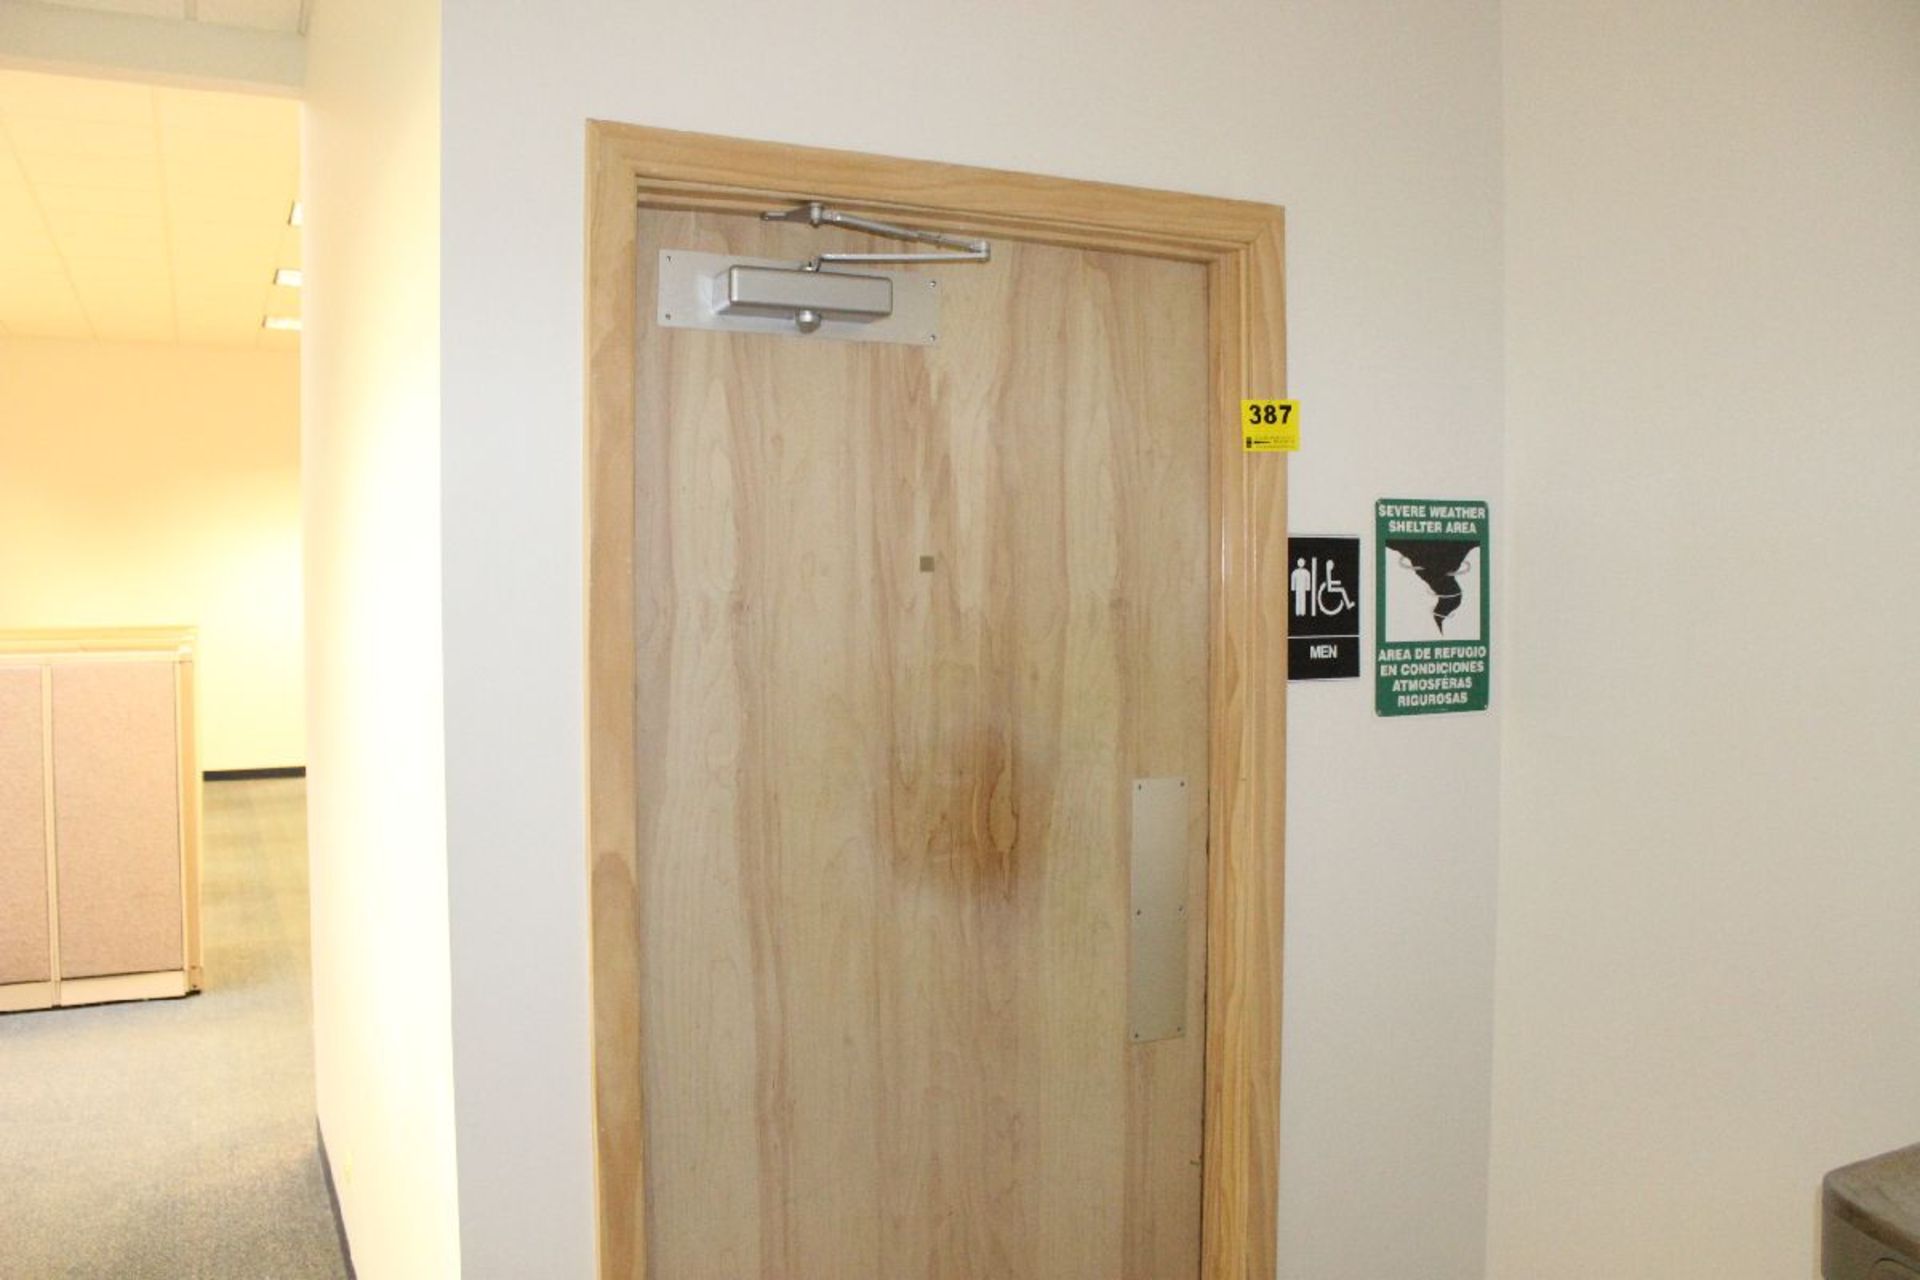 CONTENTS OF MEN'S BATHROOM INCLUDING DOOR TO MEN'S ROOM